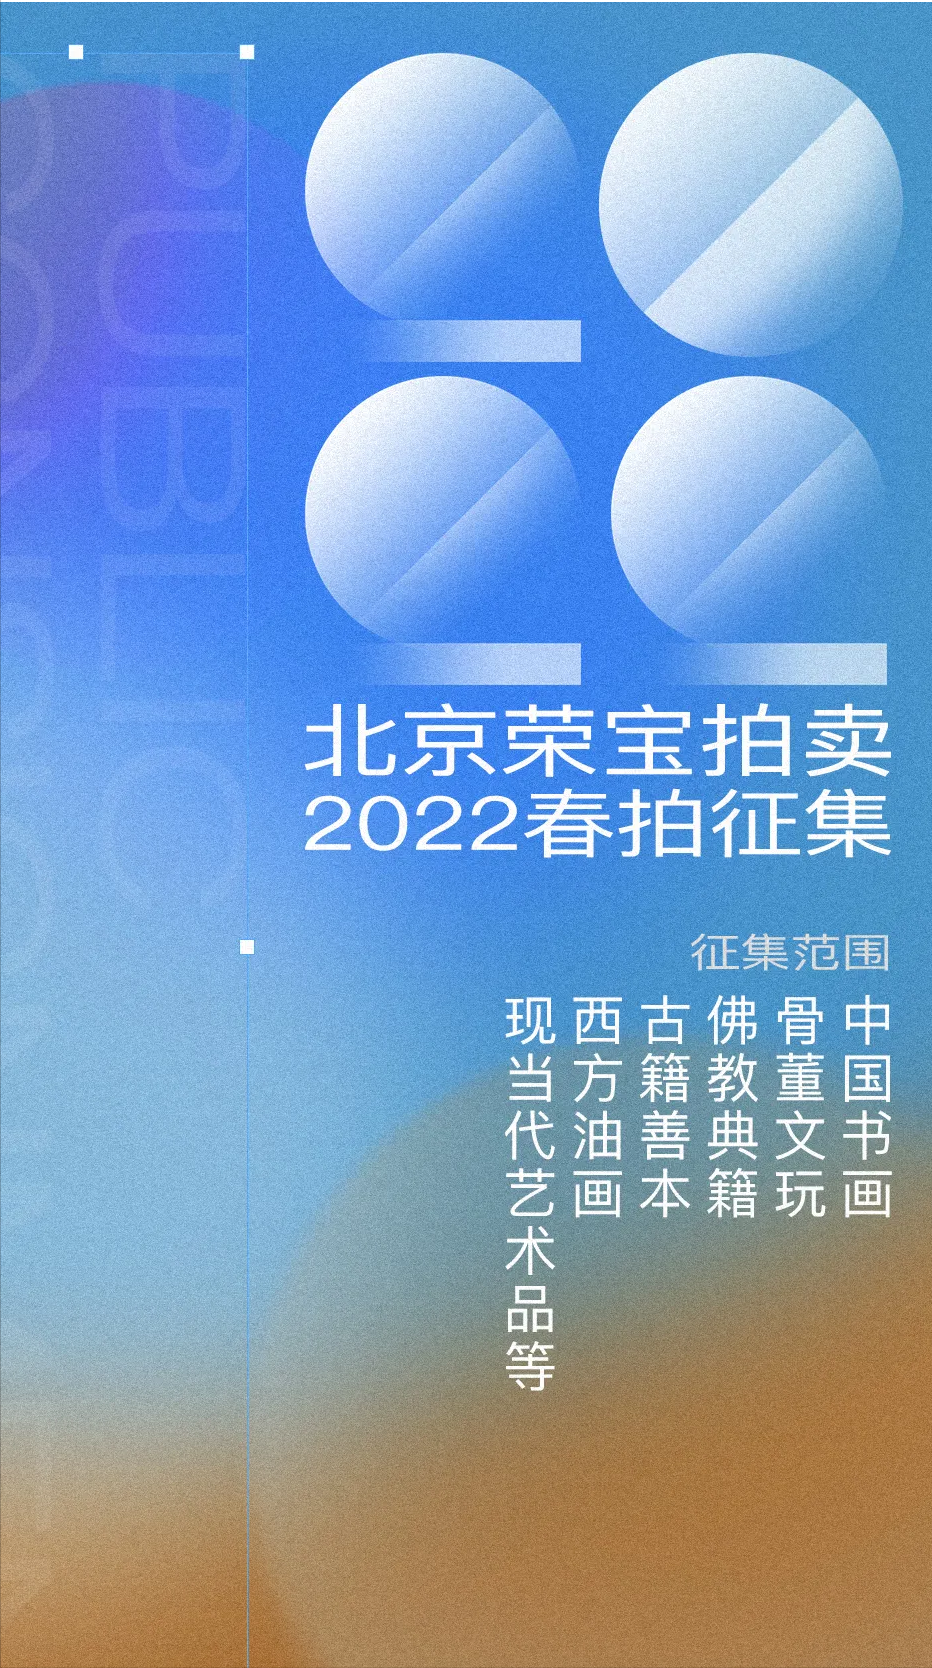 「年度回顾」北京荣宝2021年度精彩回放